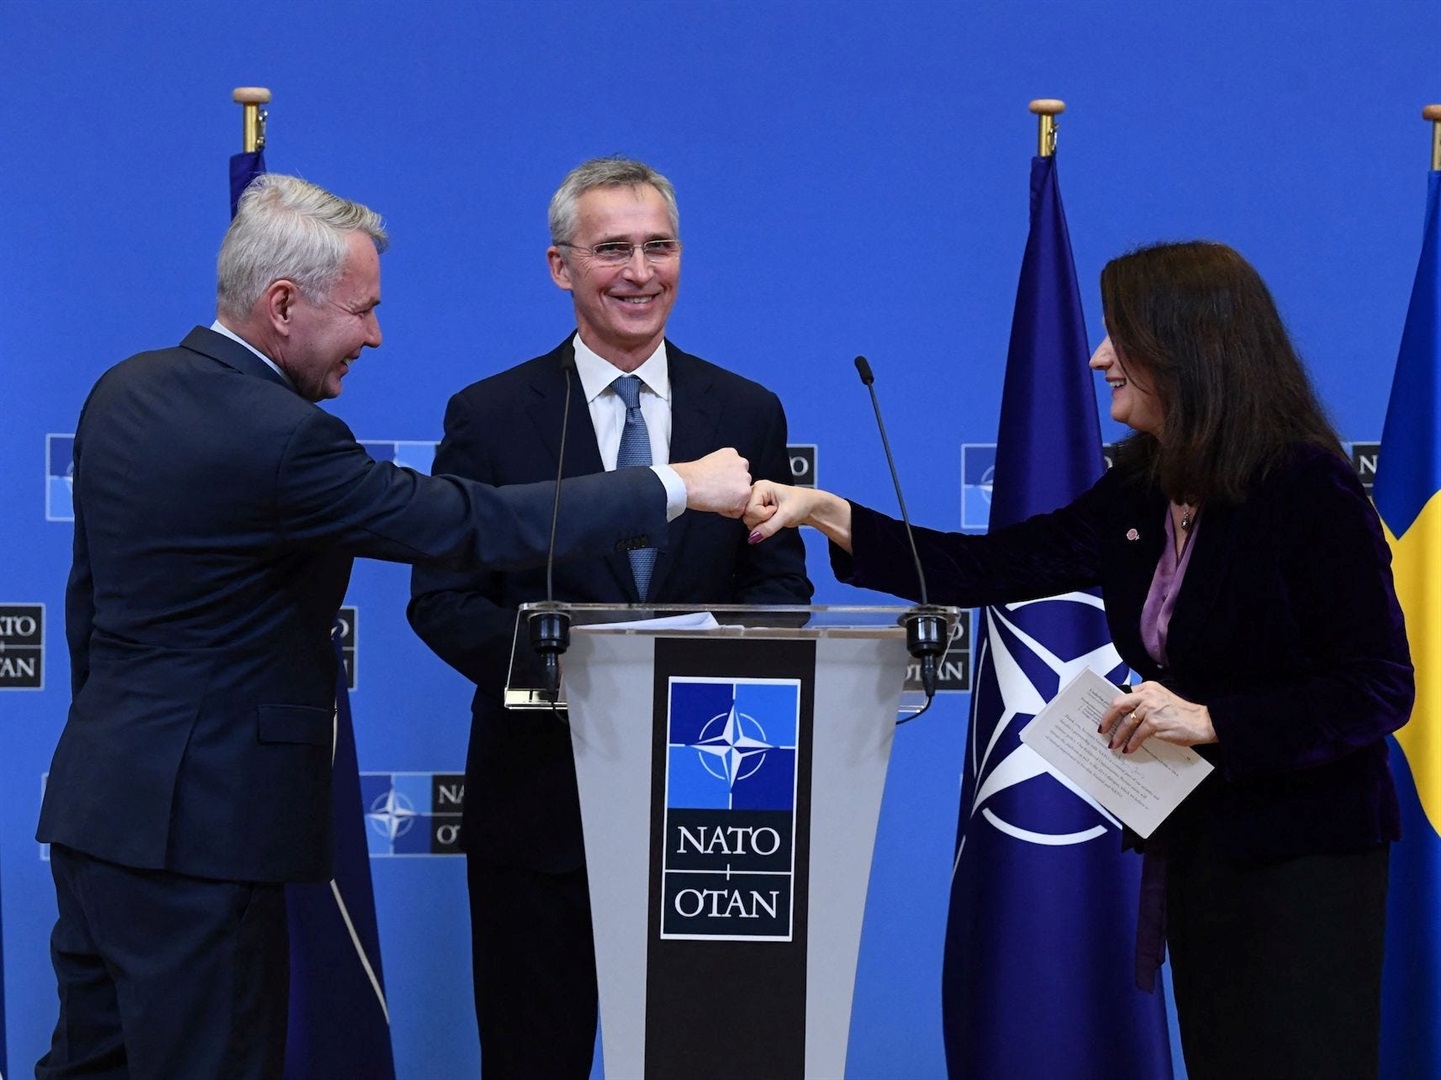 NATO Genel Sekreteri Jens Stoltenberg (ortada), Finlandiya Dışişleri Bakanı Pekka Haavisto'nun (solda) ve İsveç Dışişleri Bakanı Ann Linde'nin Ocak ayında Brüksel'deki NATO karargahında düzenlediği basın toplantısından sonra yumruk yumruğa görünüyor.  Getty Images aracılığıyla JOHN THYS/AFP